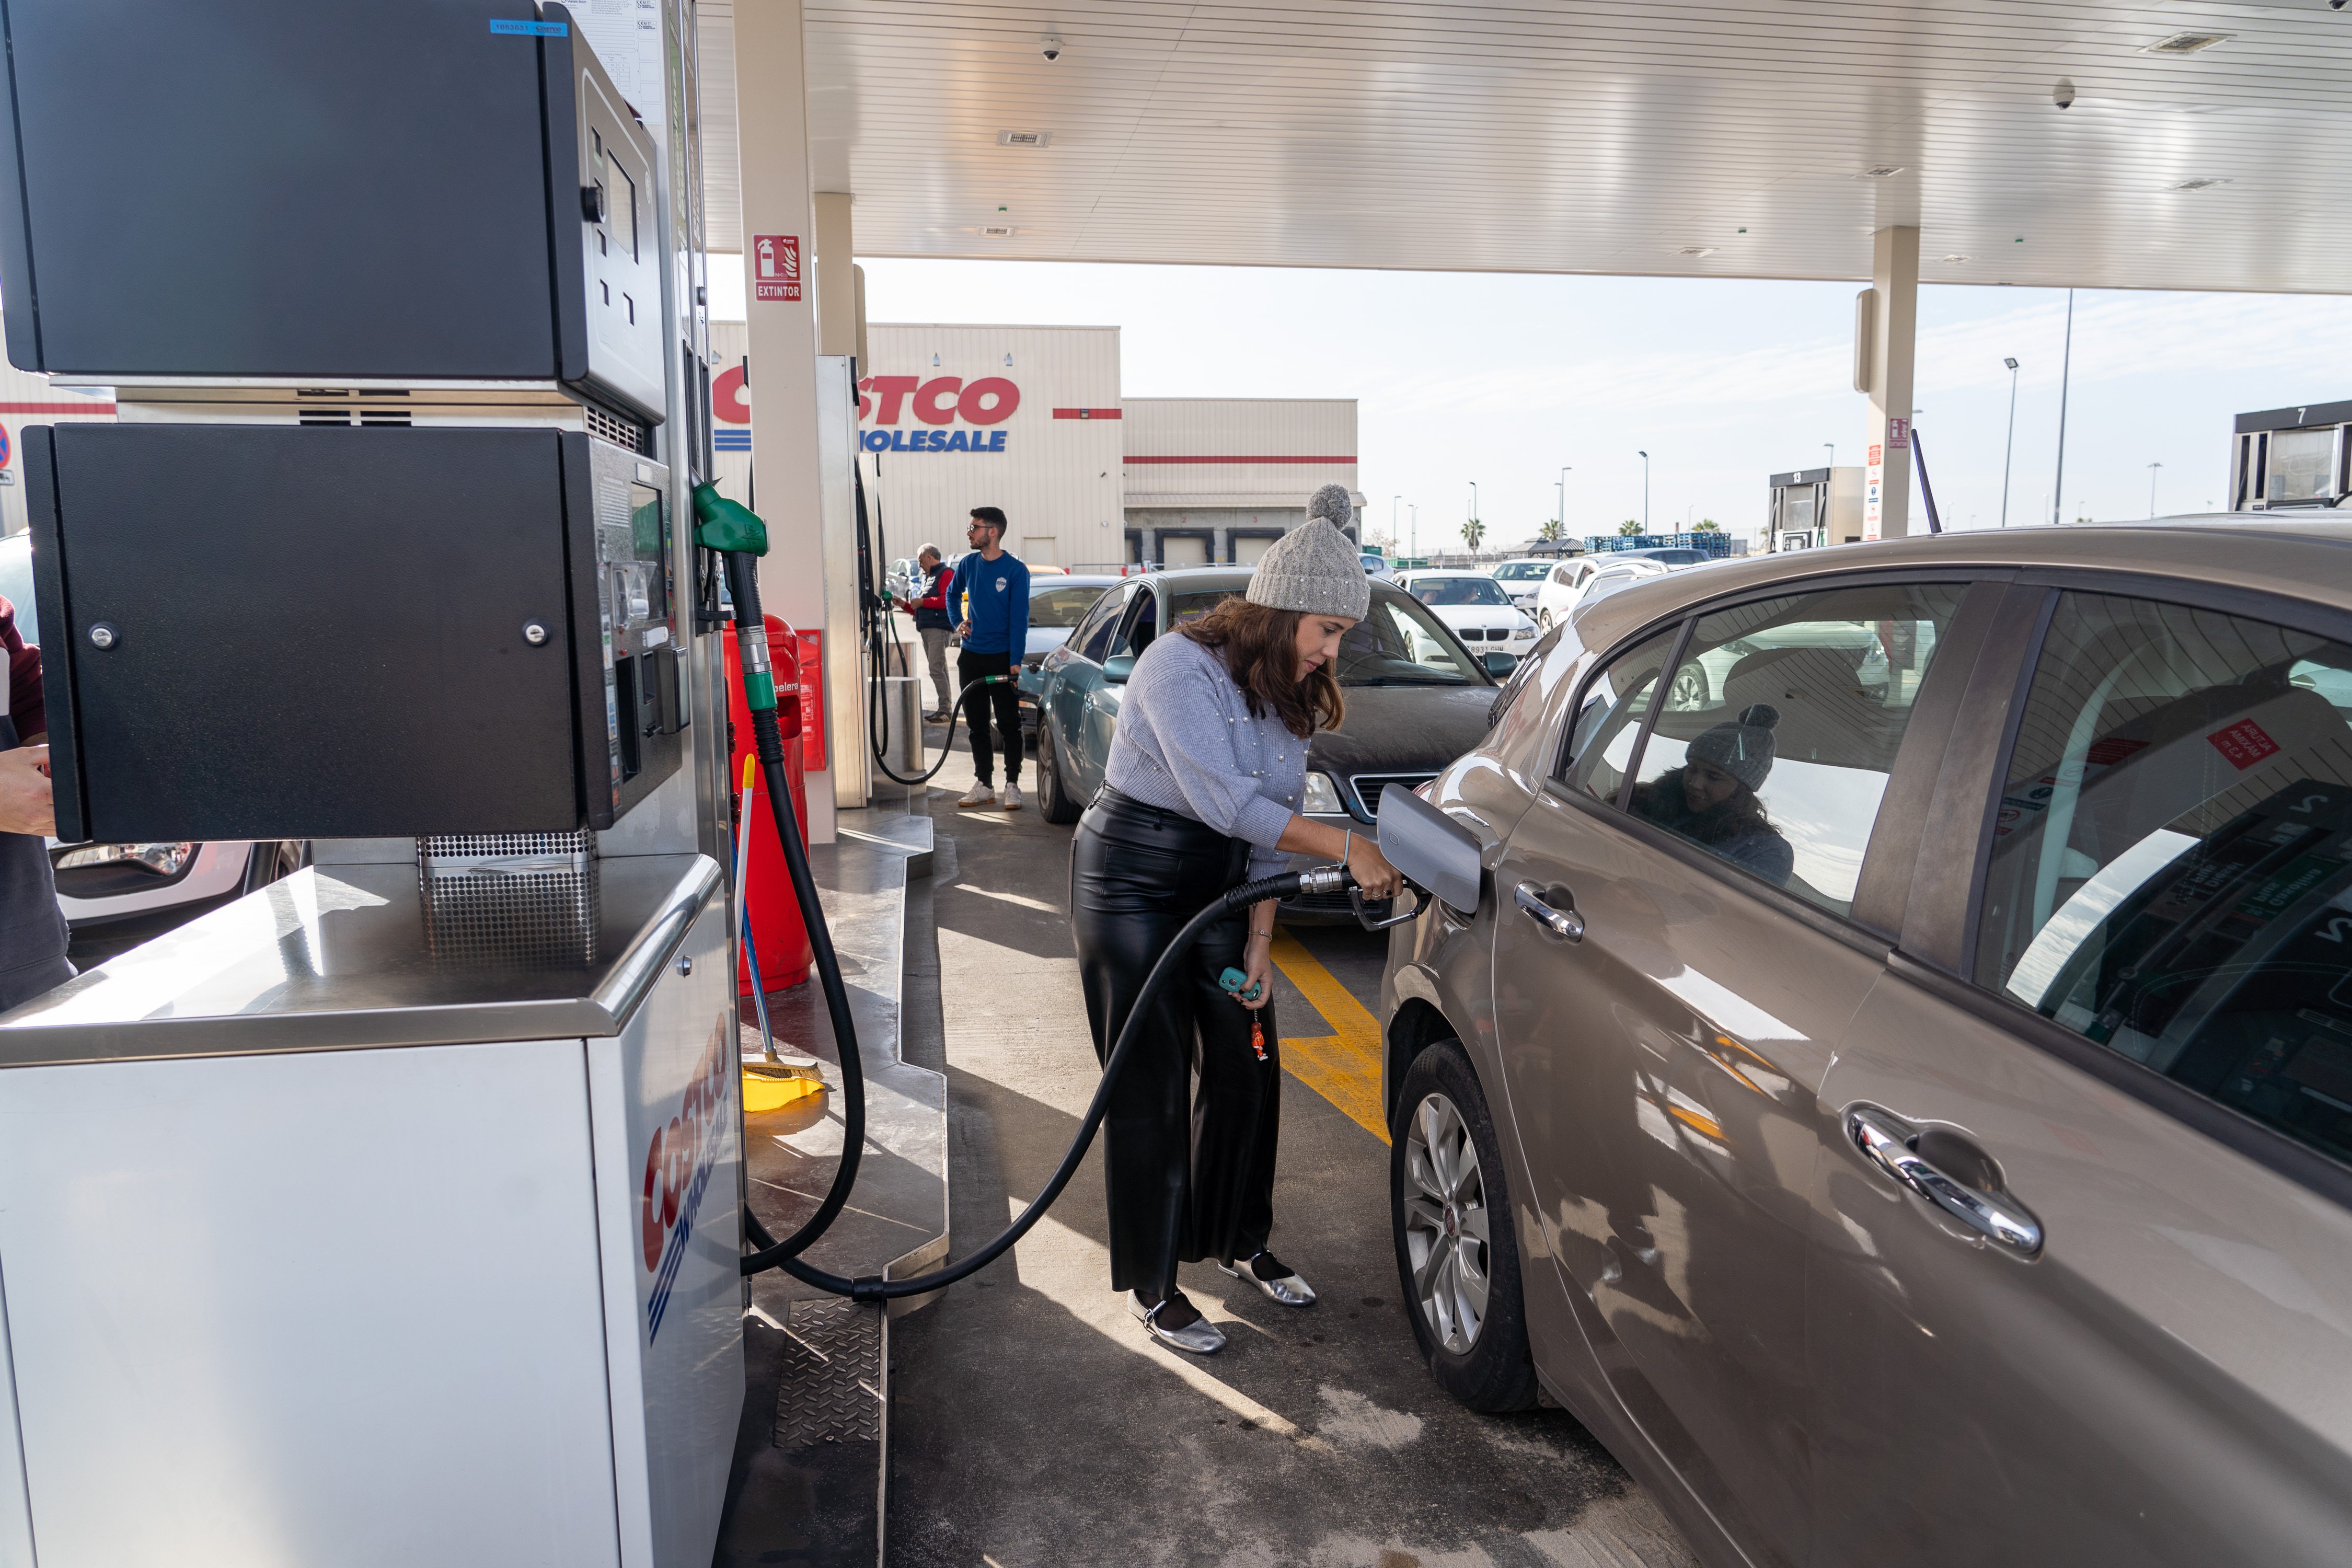 ¿Cuánto puede llegar a costar un litro de carburante sintético en una gasolinera?